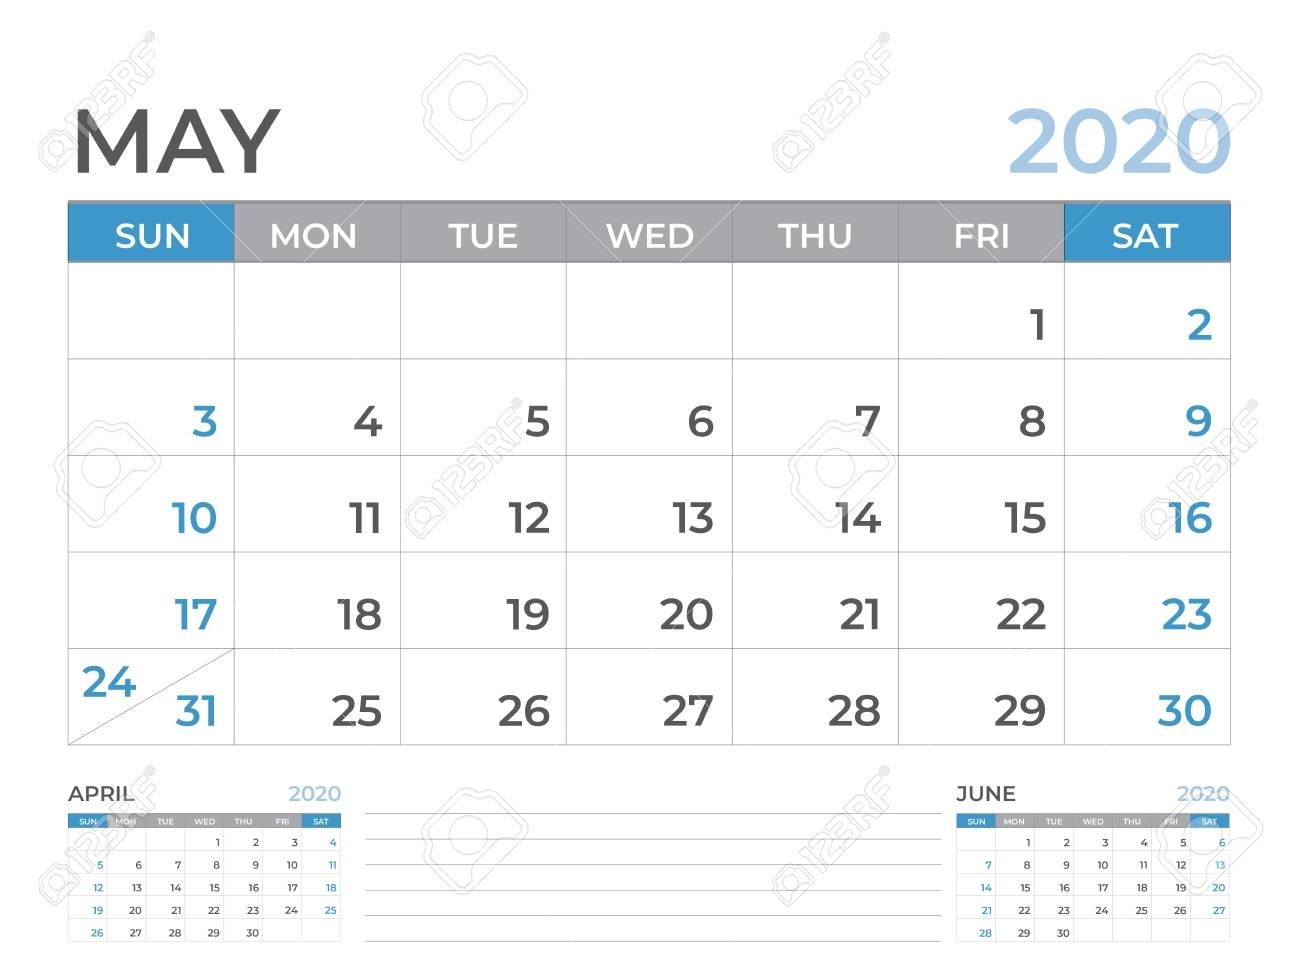 May 2020 Calendar Template, Desk Calendar Layout Size 8 X 6..